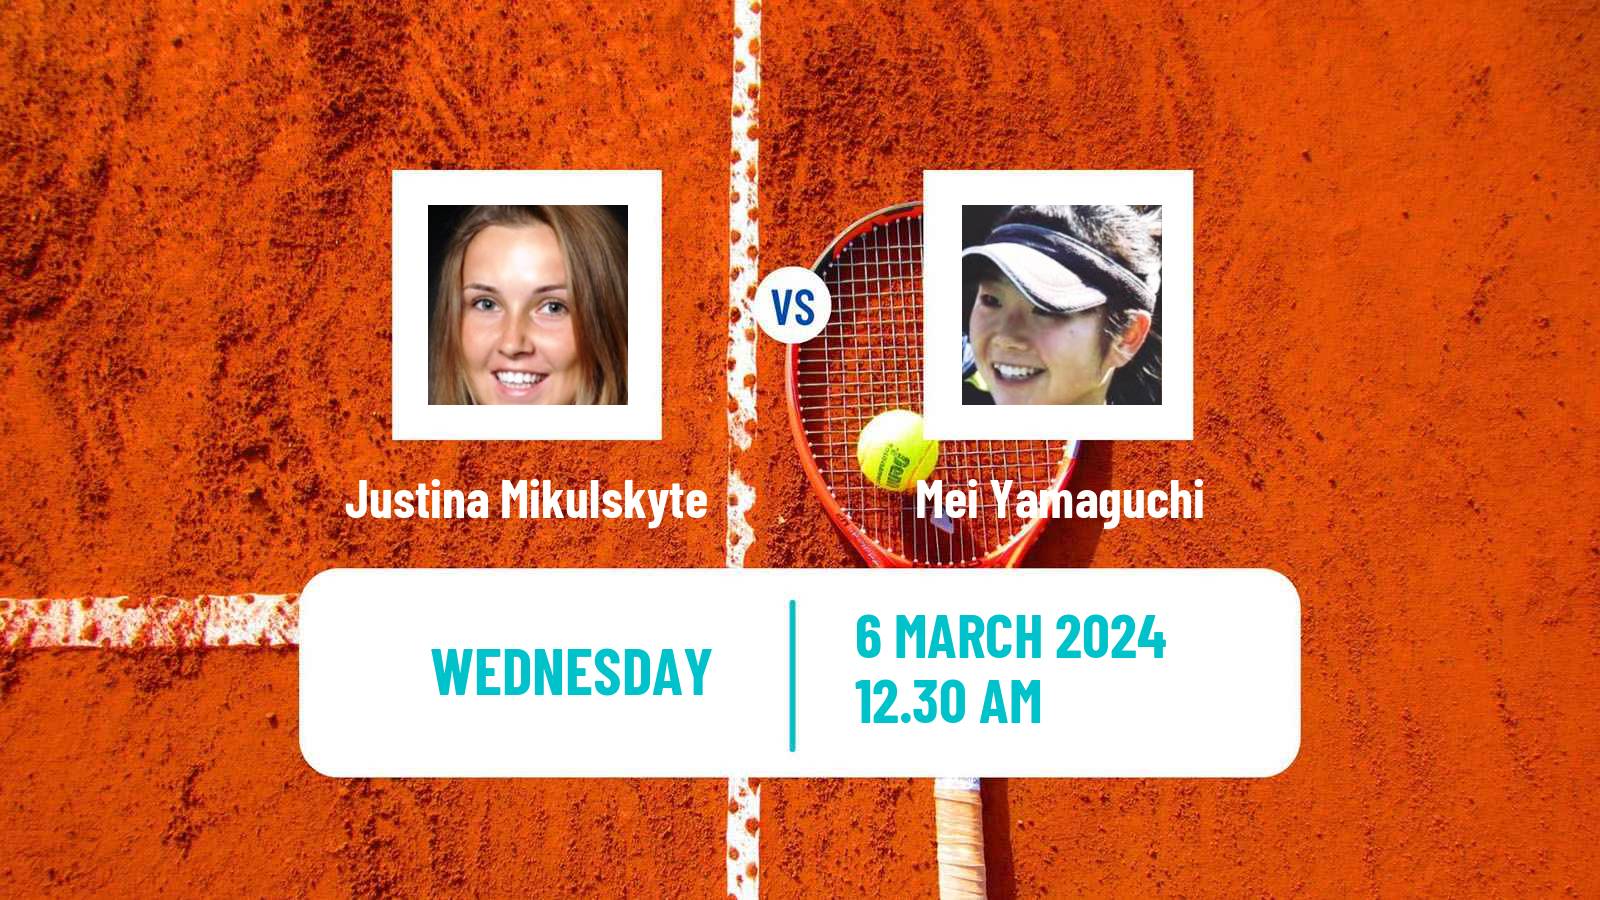 Tennis ITF W35 Nagpur Women Justina Mikulskyte - Mei Yamaguchi